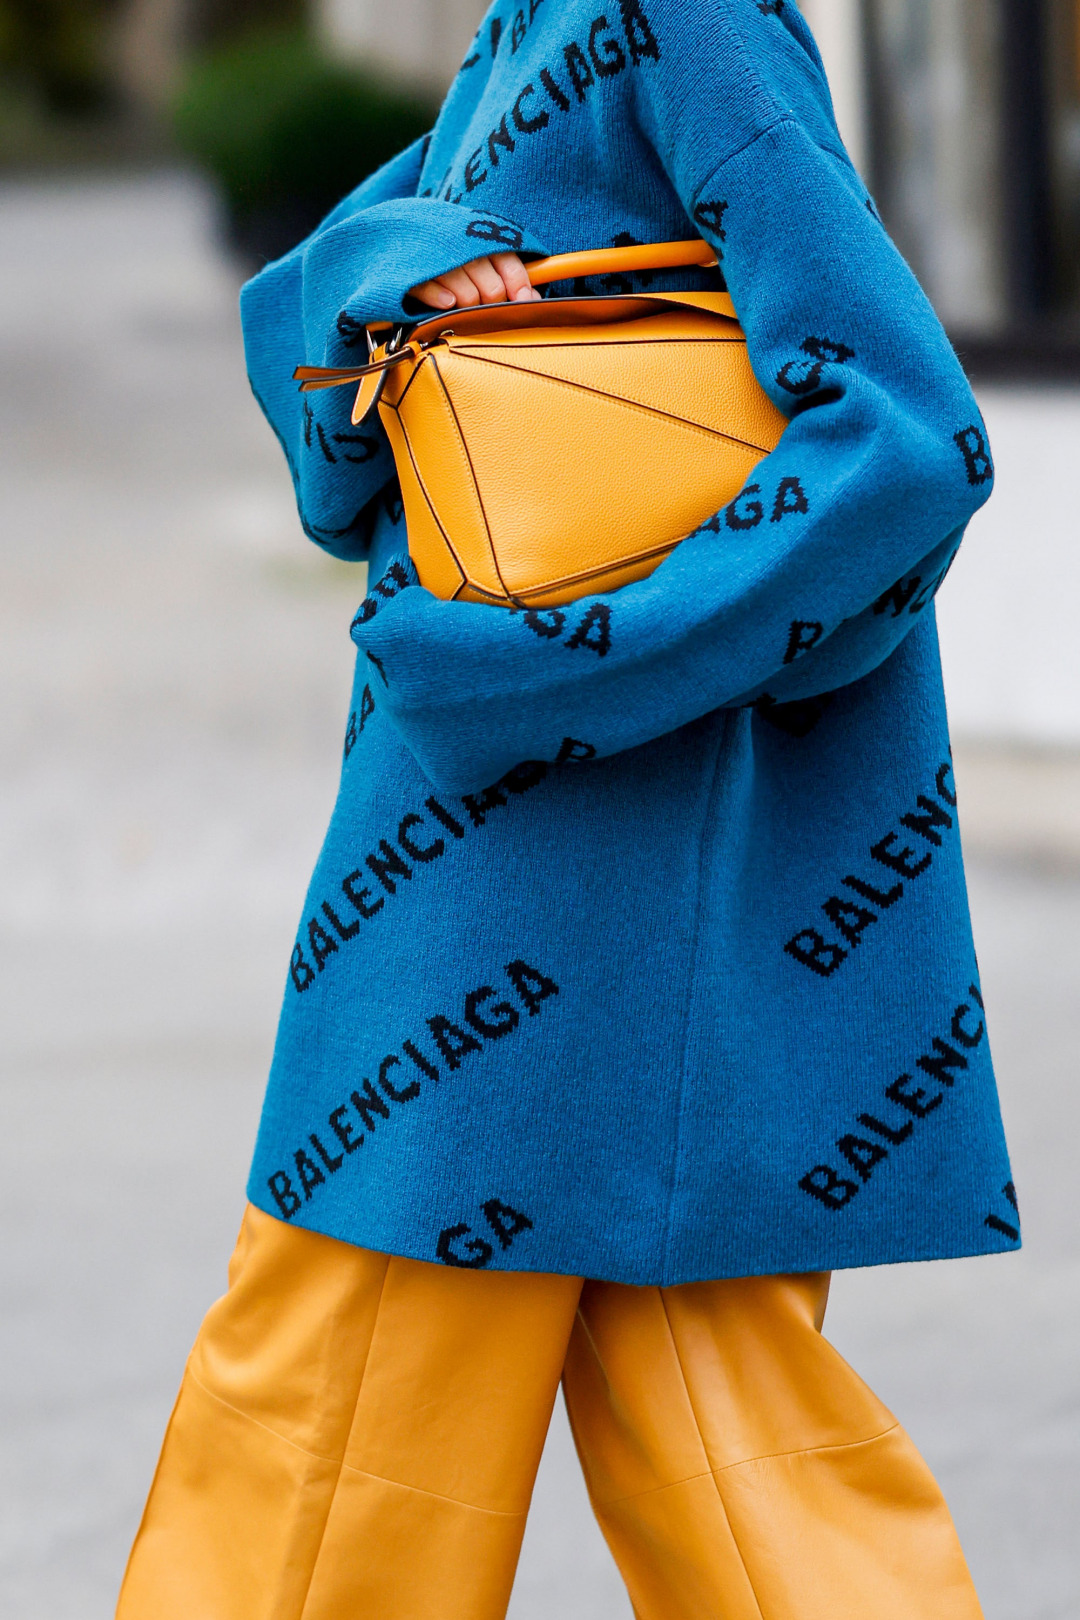 Balenciaga Twitter'dan Ayrılan İlk Moda Markalarından Biri Oldu